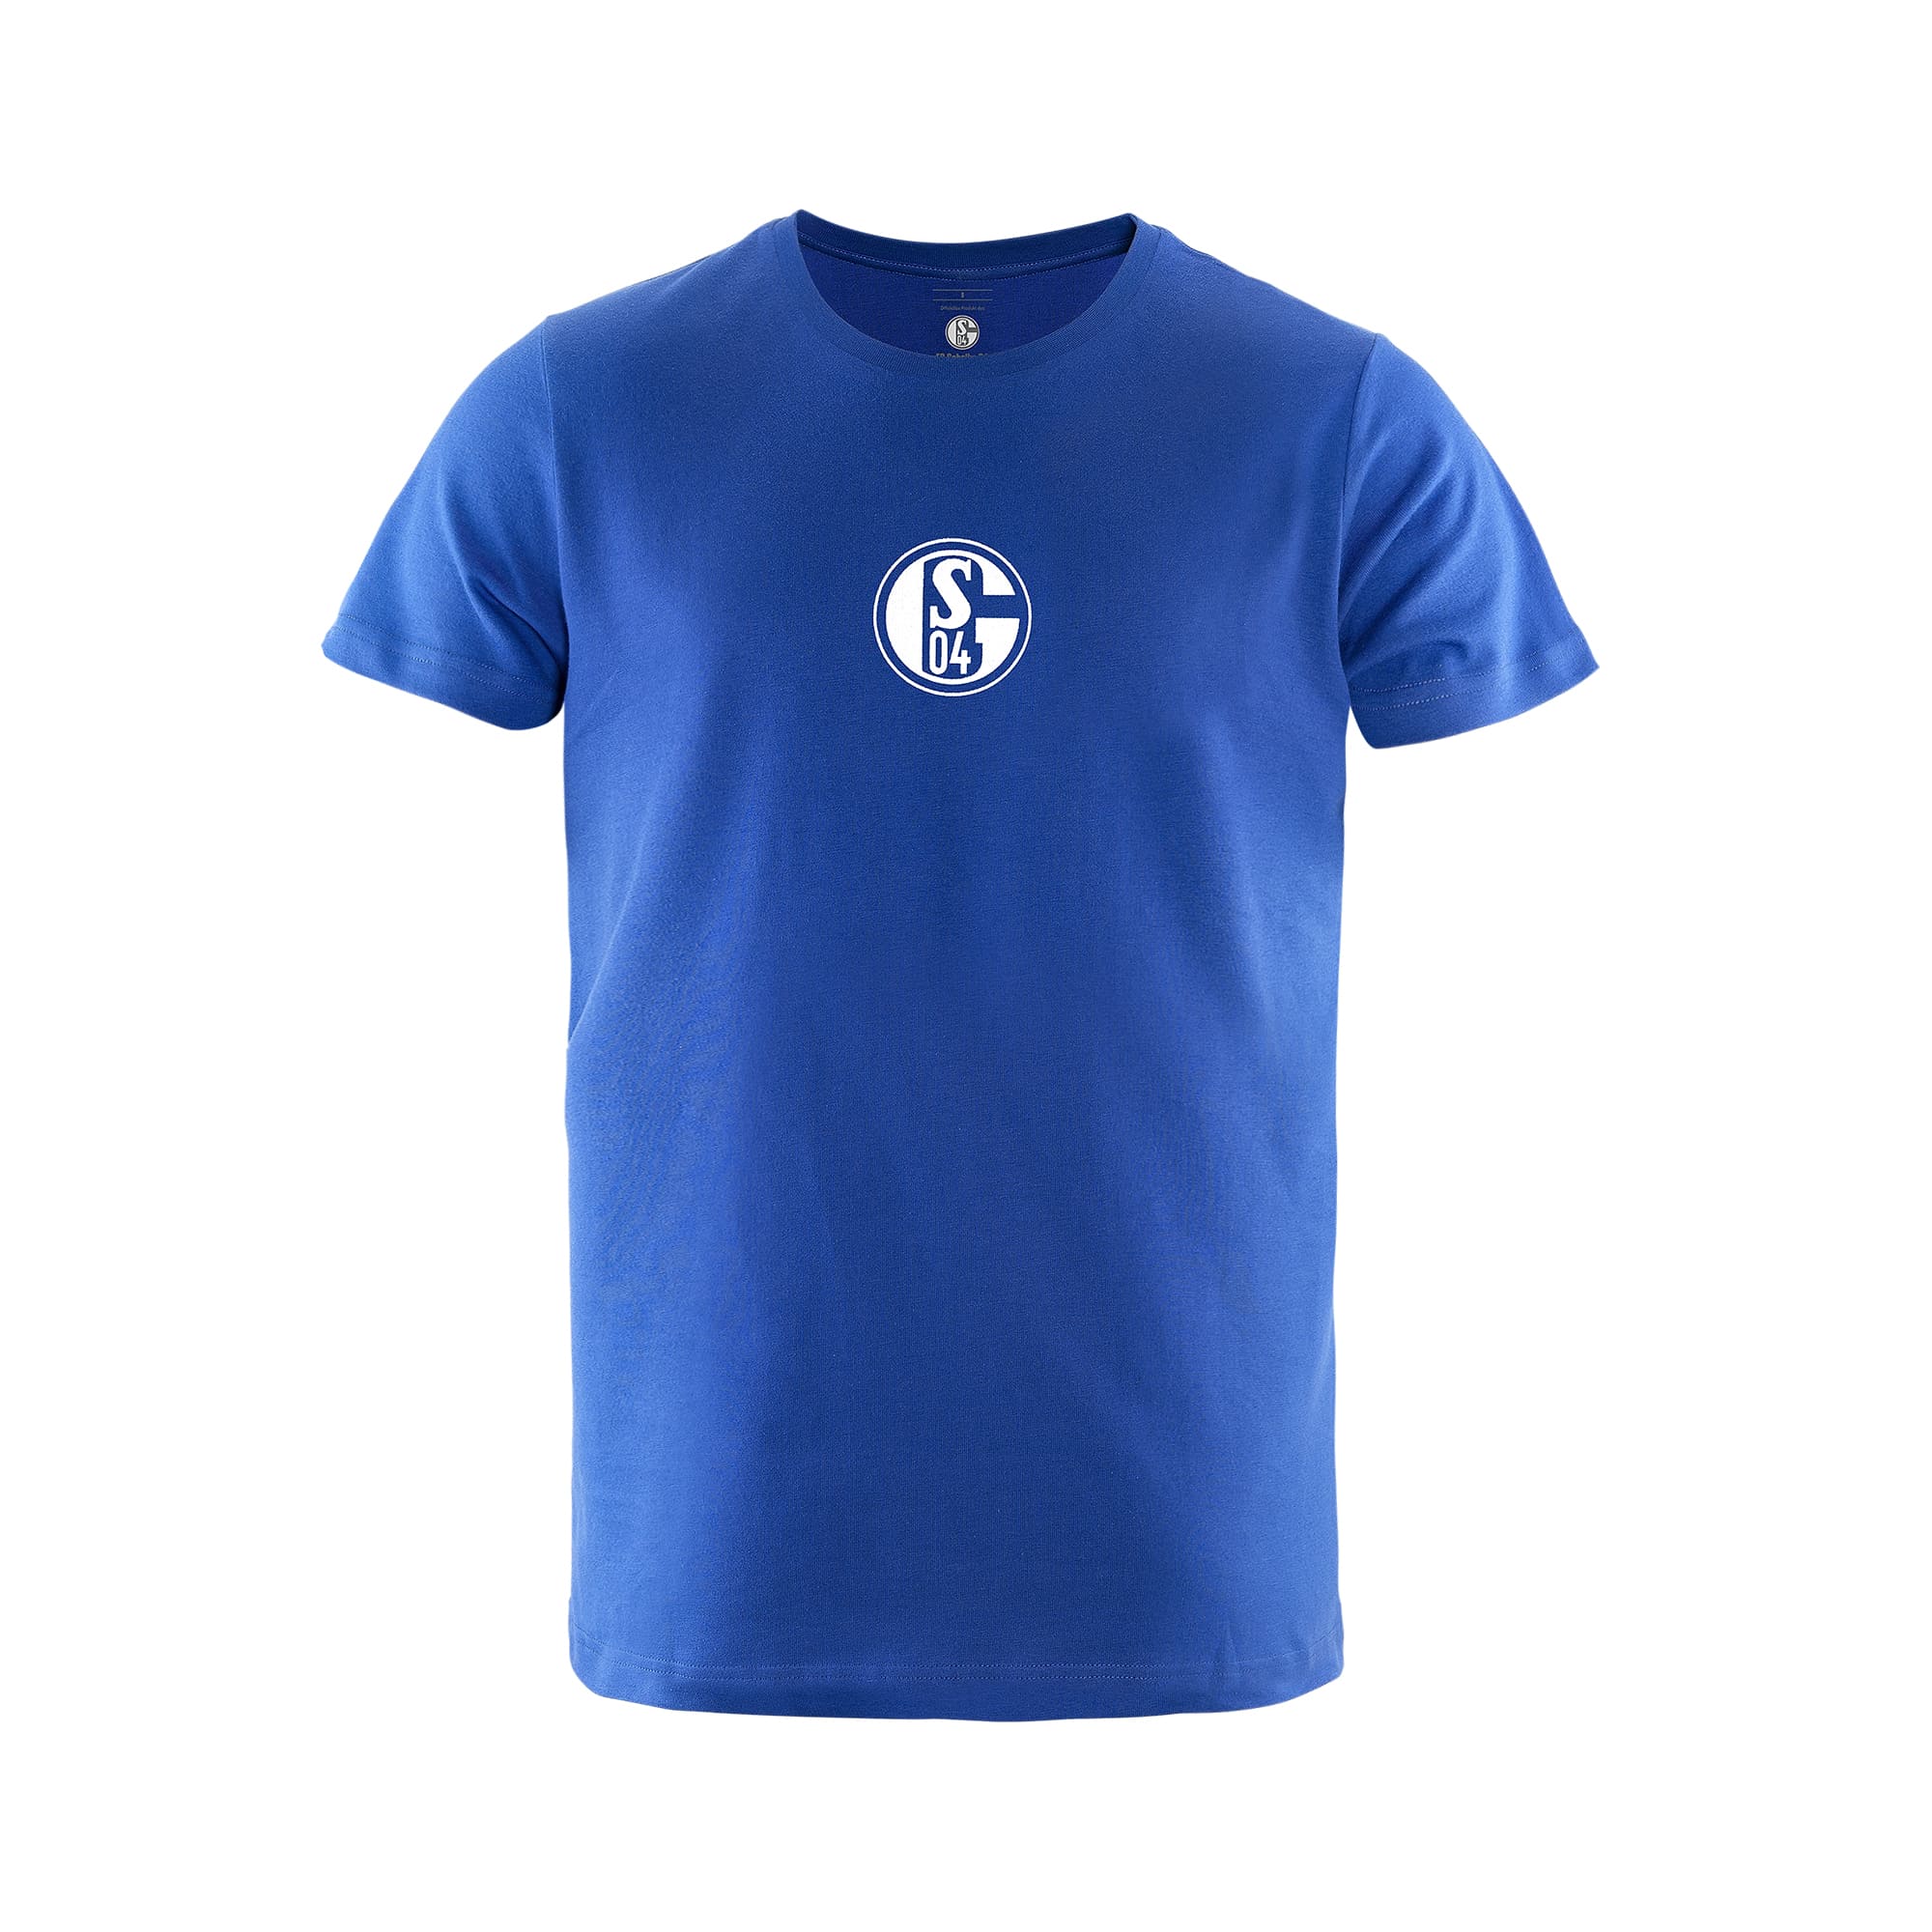 T-Shirt Kids Basic blau VT